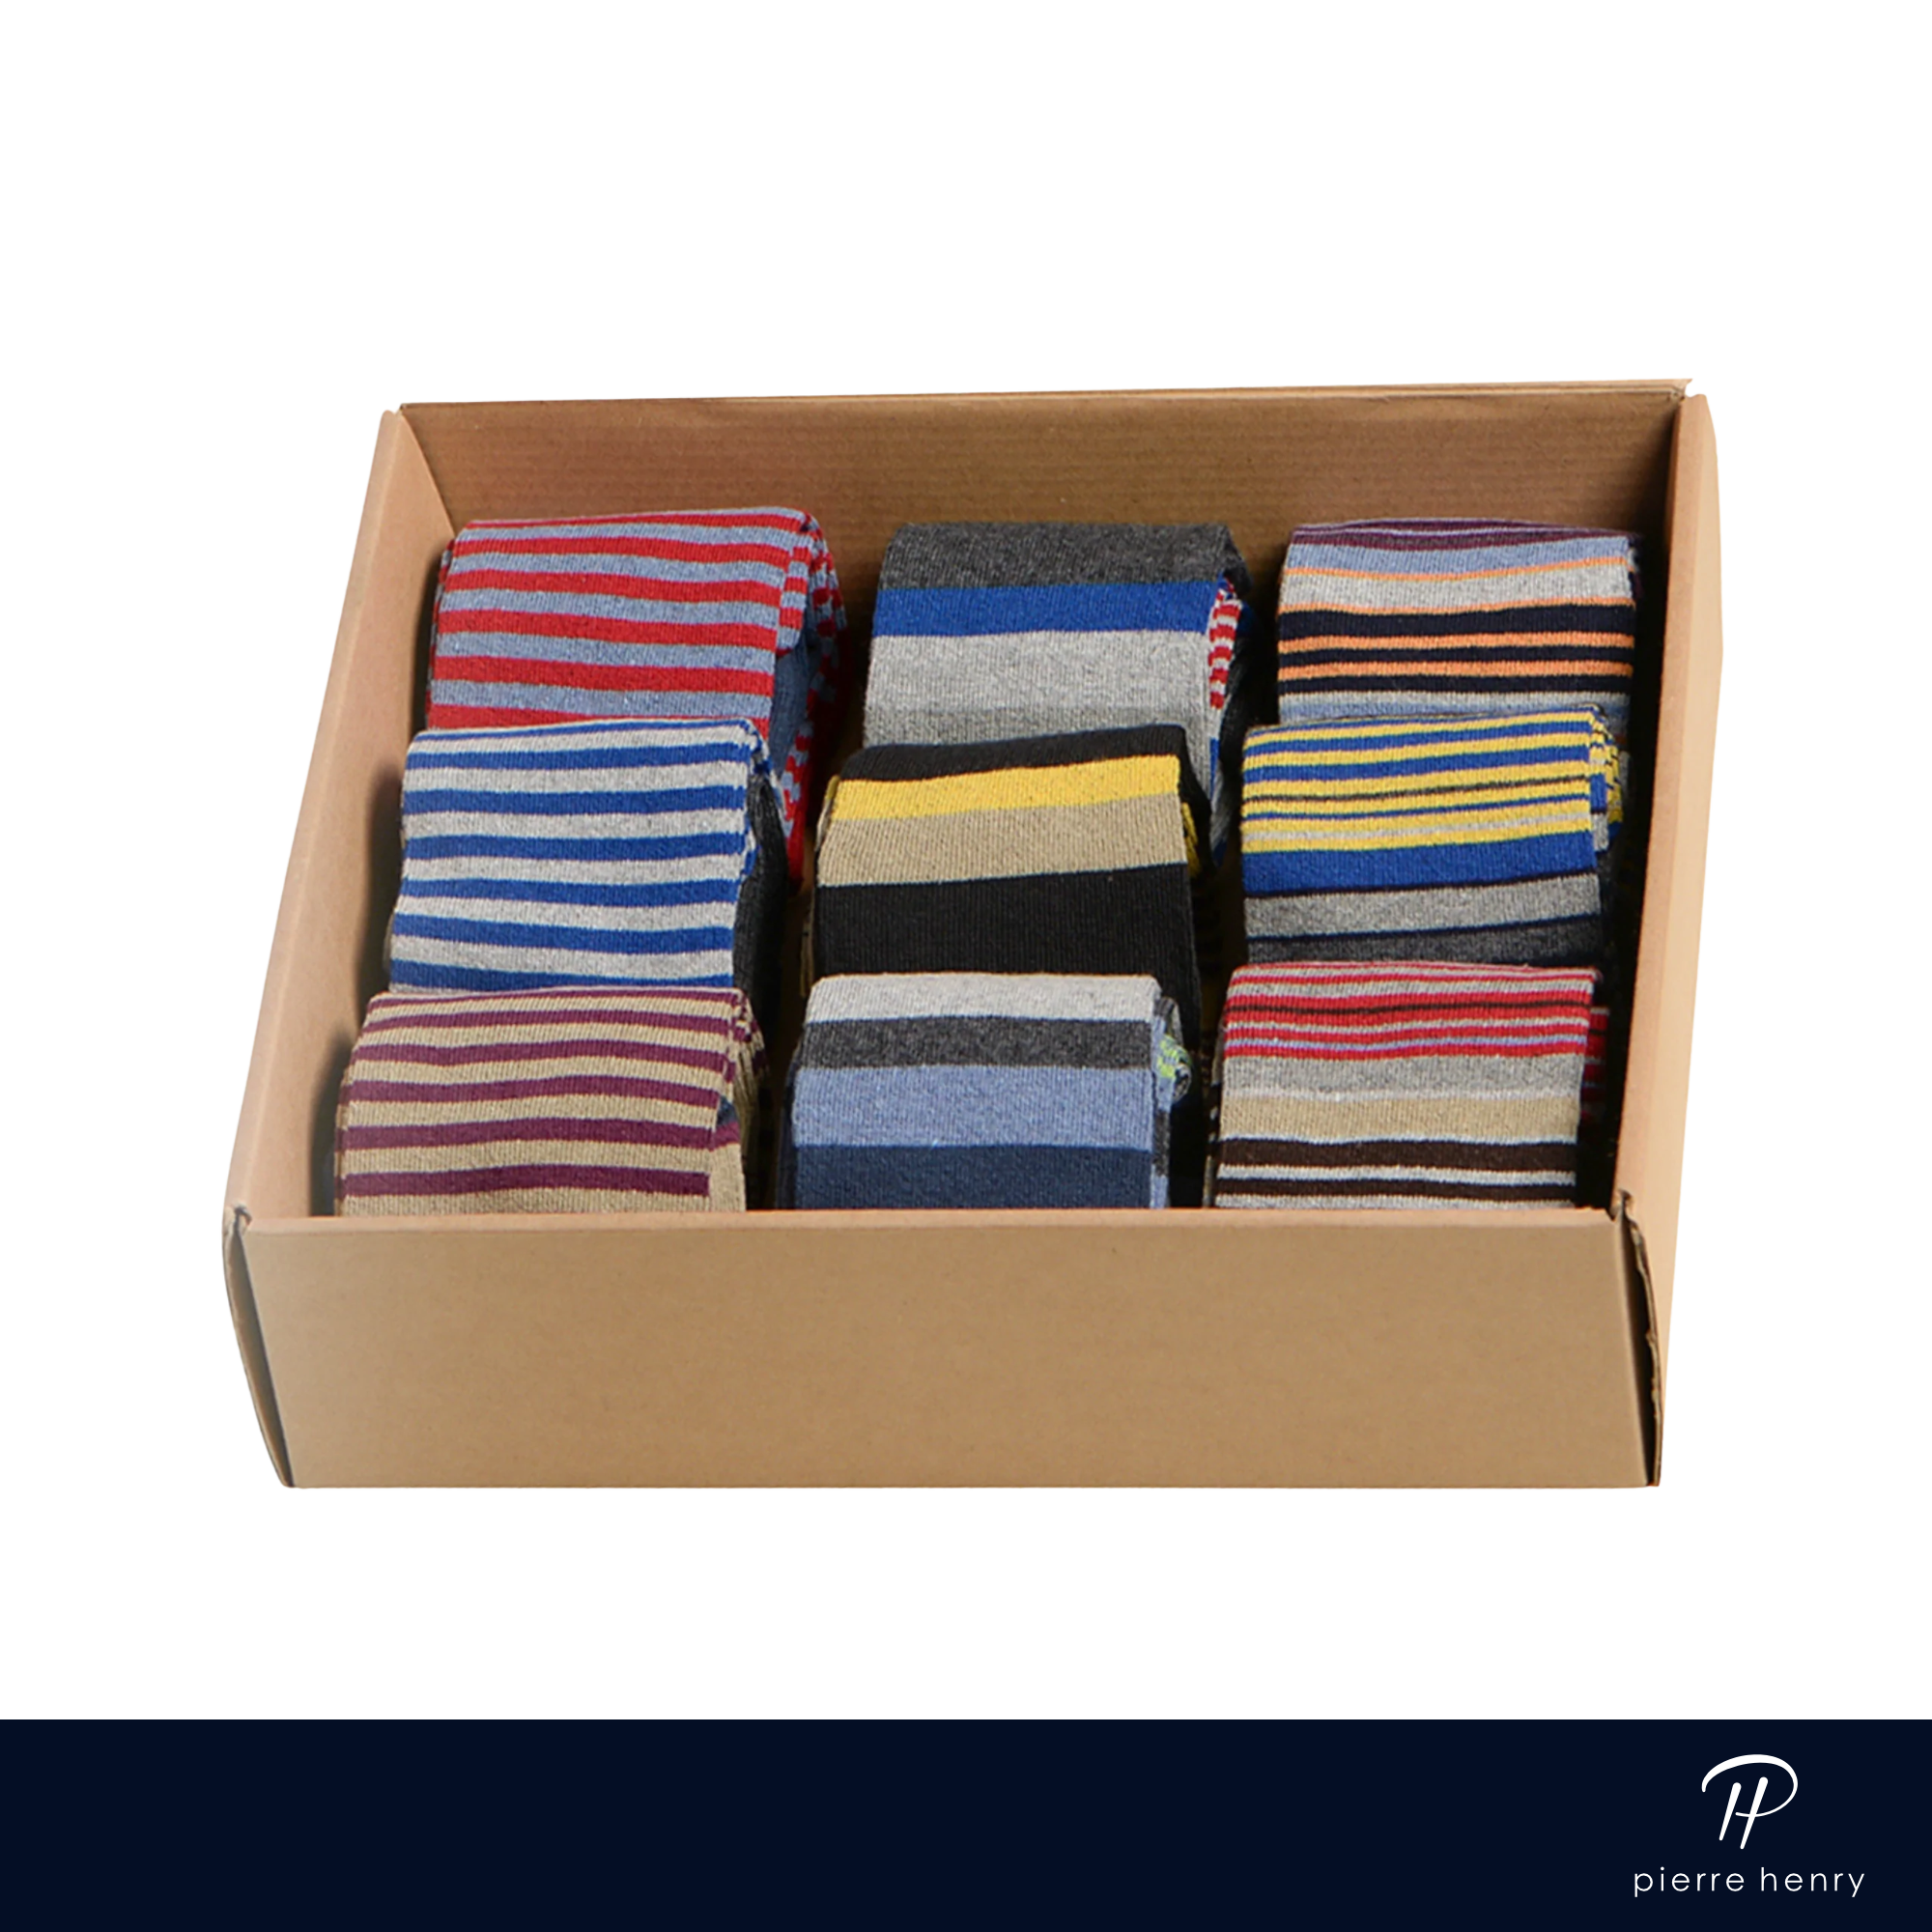 boxed of dress socks for men, red dress socks, blue dress socks, purple dress socks, yellow dress socks, striped dress socks